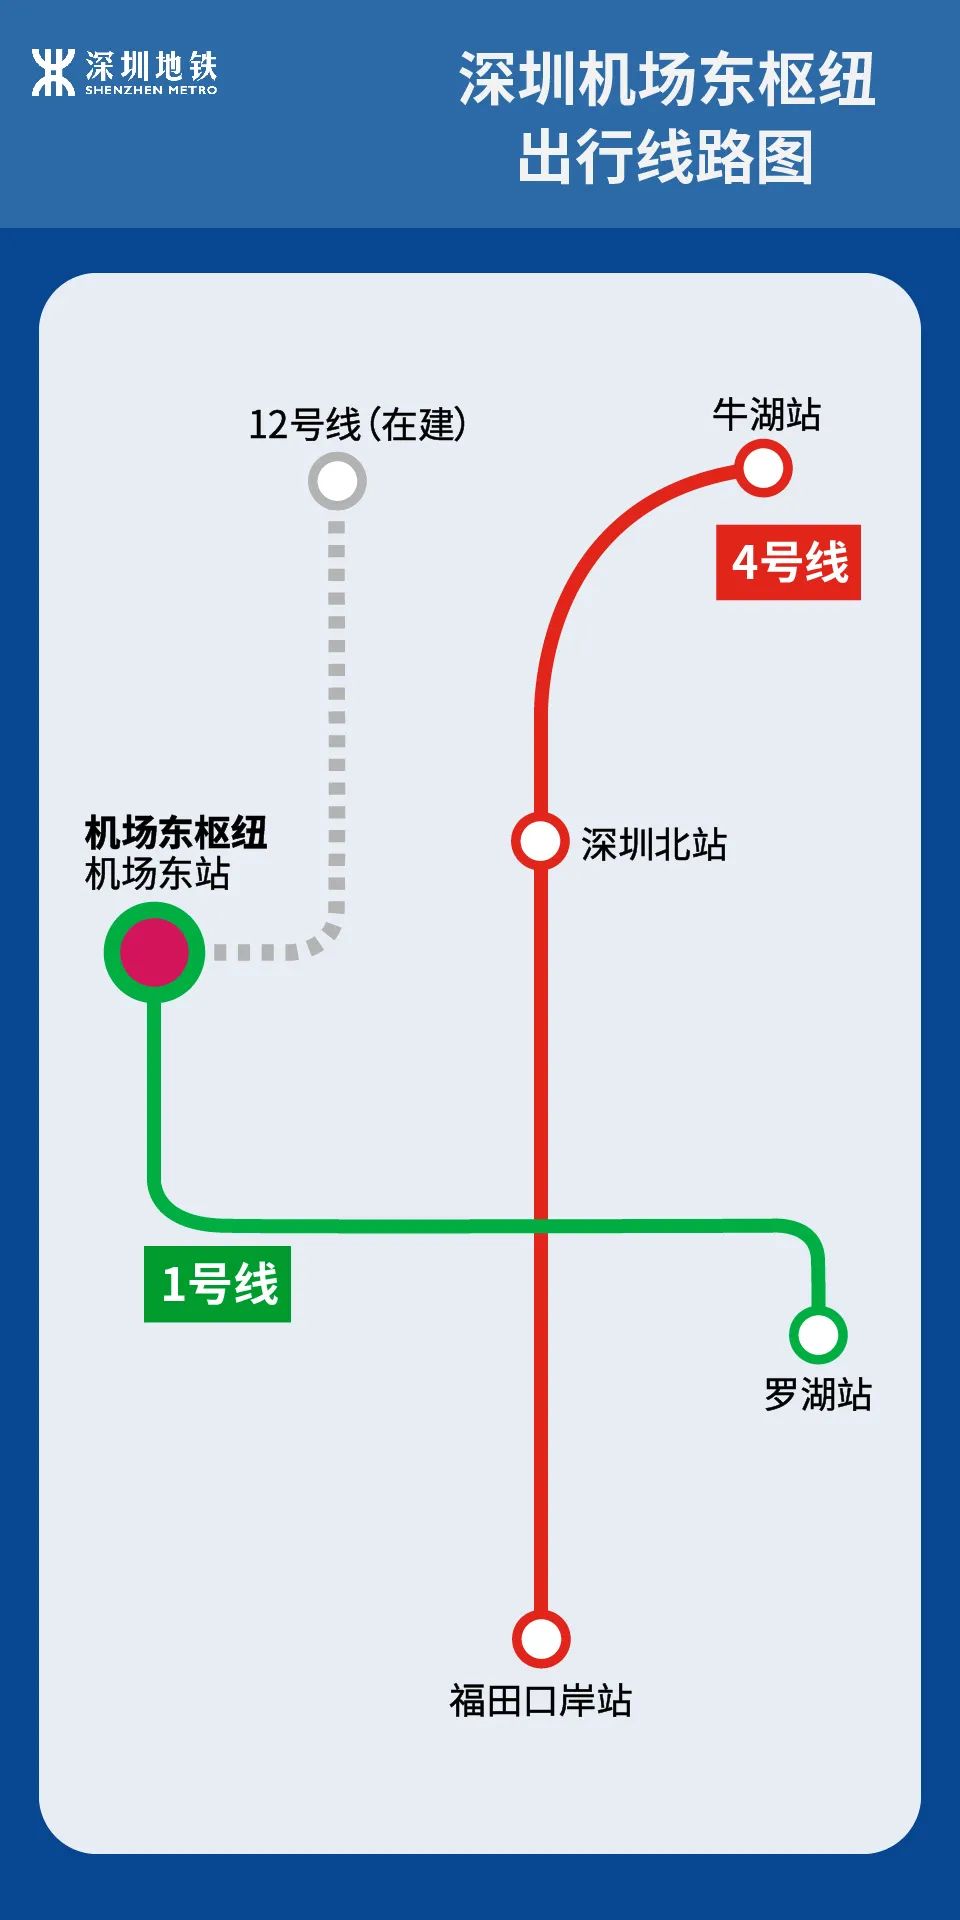 惊艳!深圳机场东枢纽来啦!地铁无缝接驳